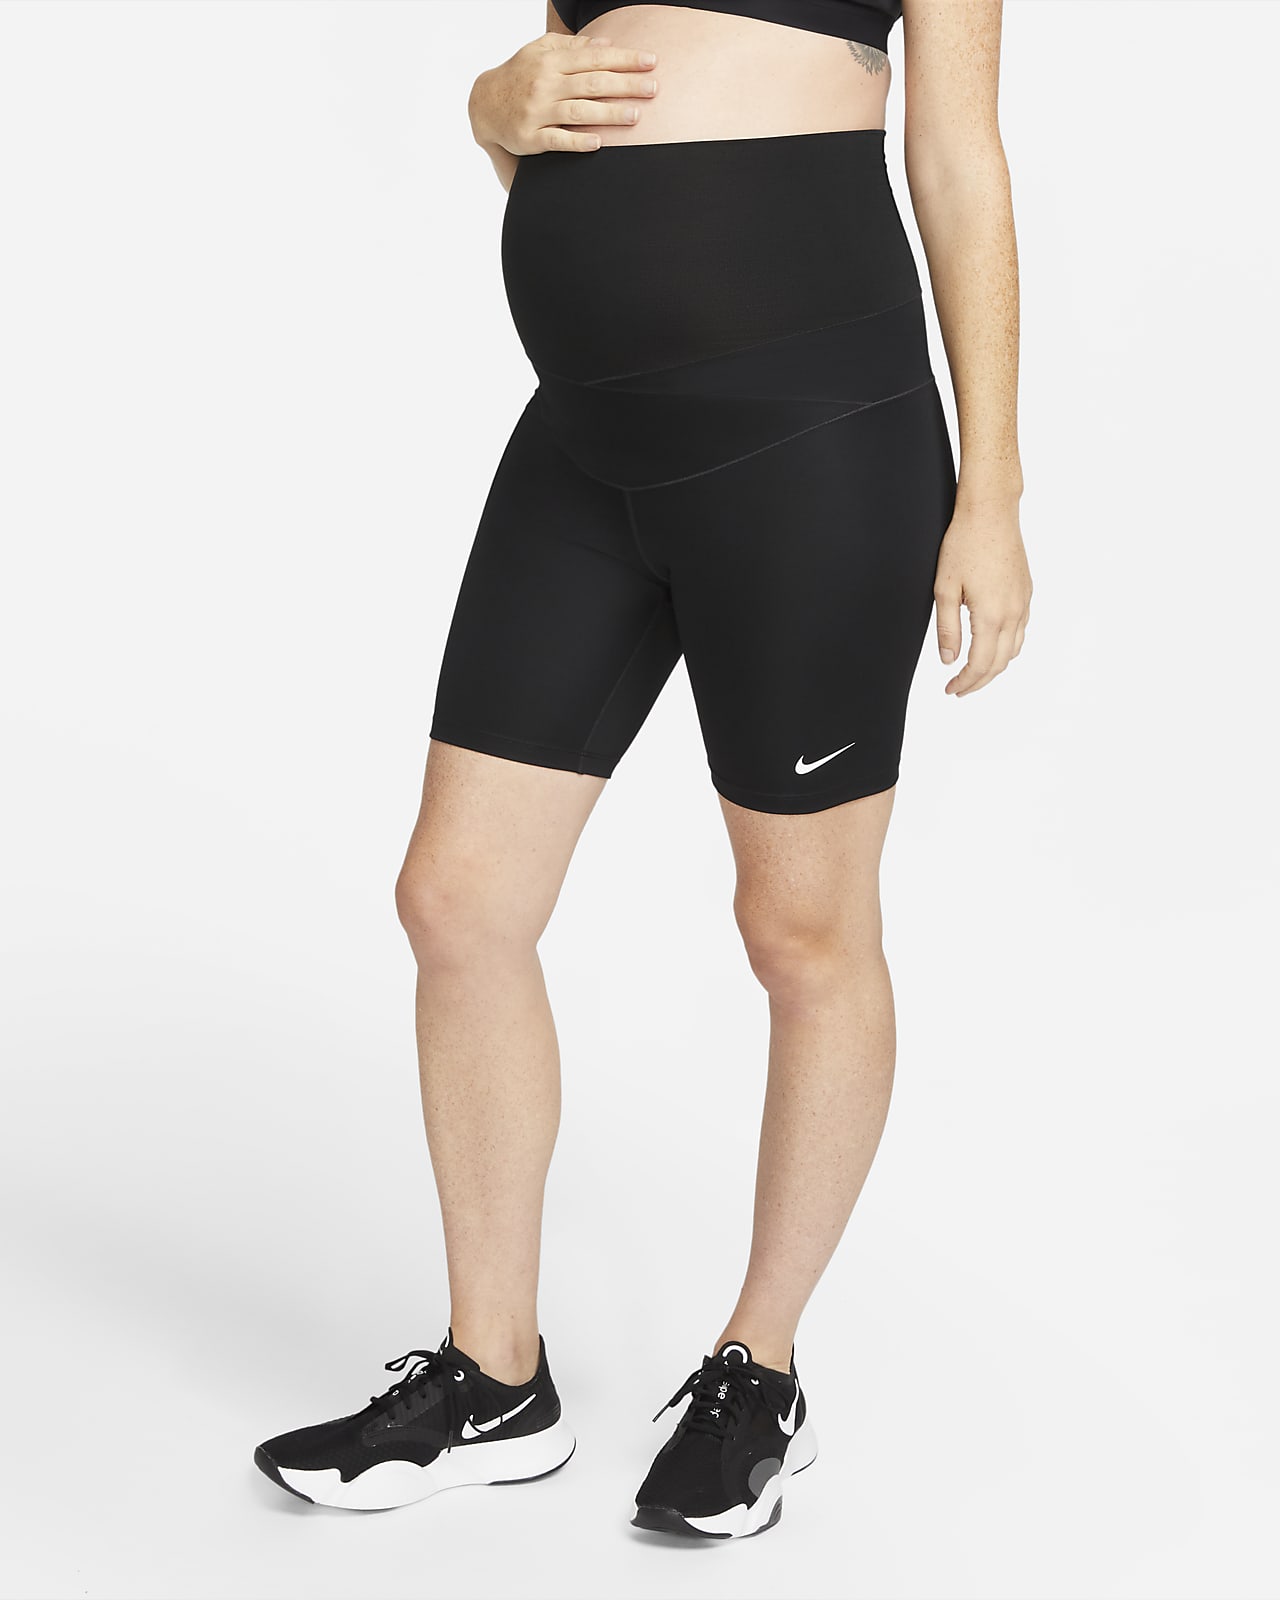 Nike One (M) sykkelshorts til dame (18 cm) (mammaklær)